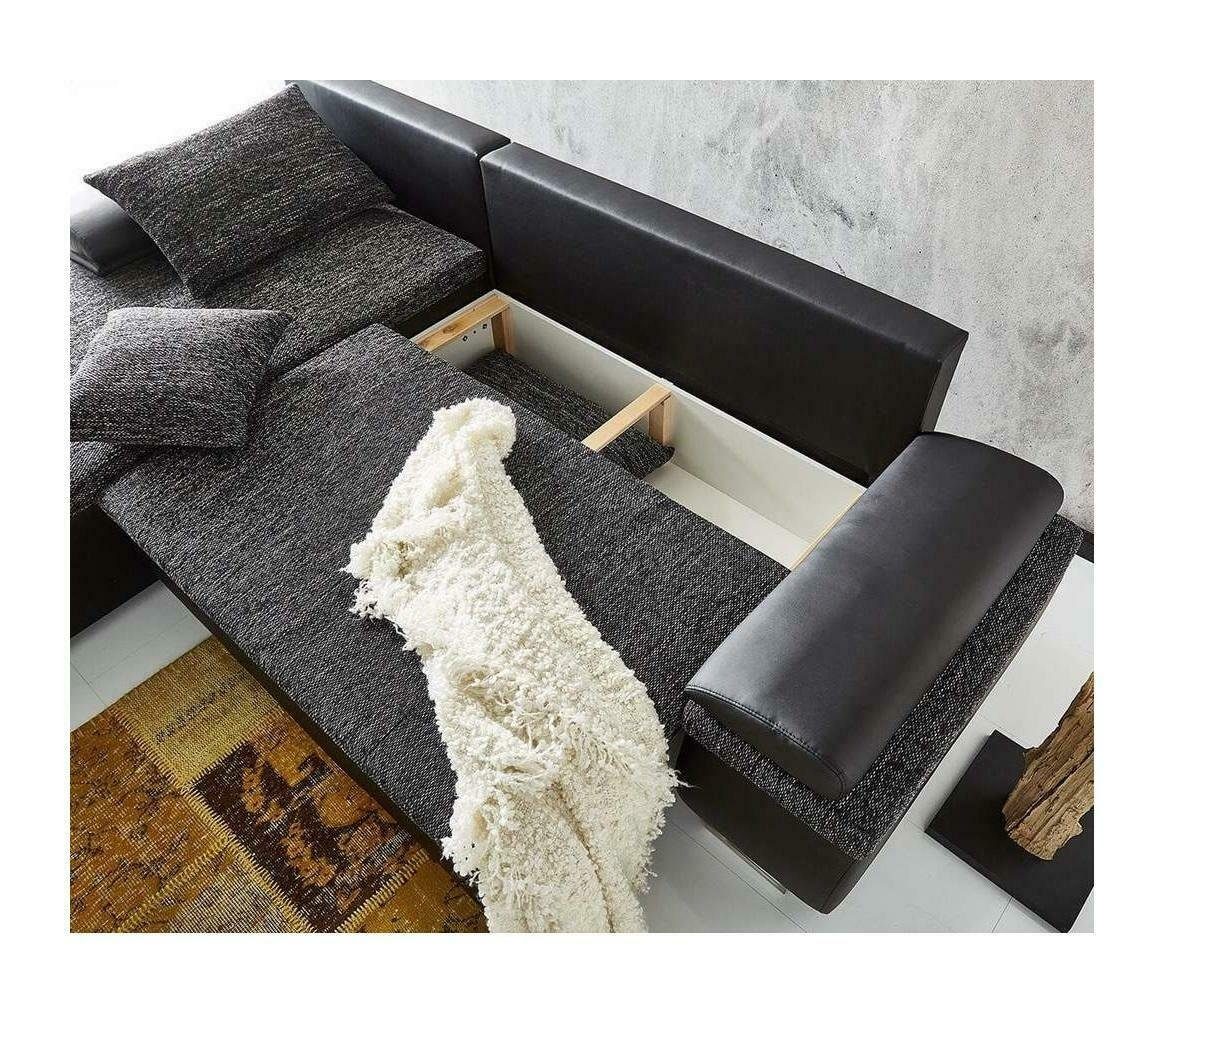 Polster Made Design Europe JVmoebel Ecksofa Mit Couch, Modernes Schlaffunktion Luxus in Sofa Graues